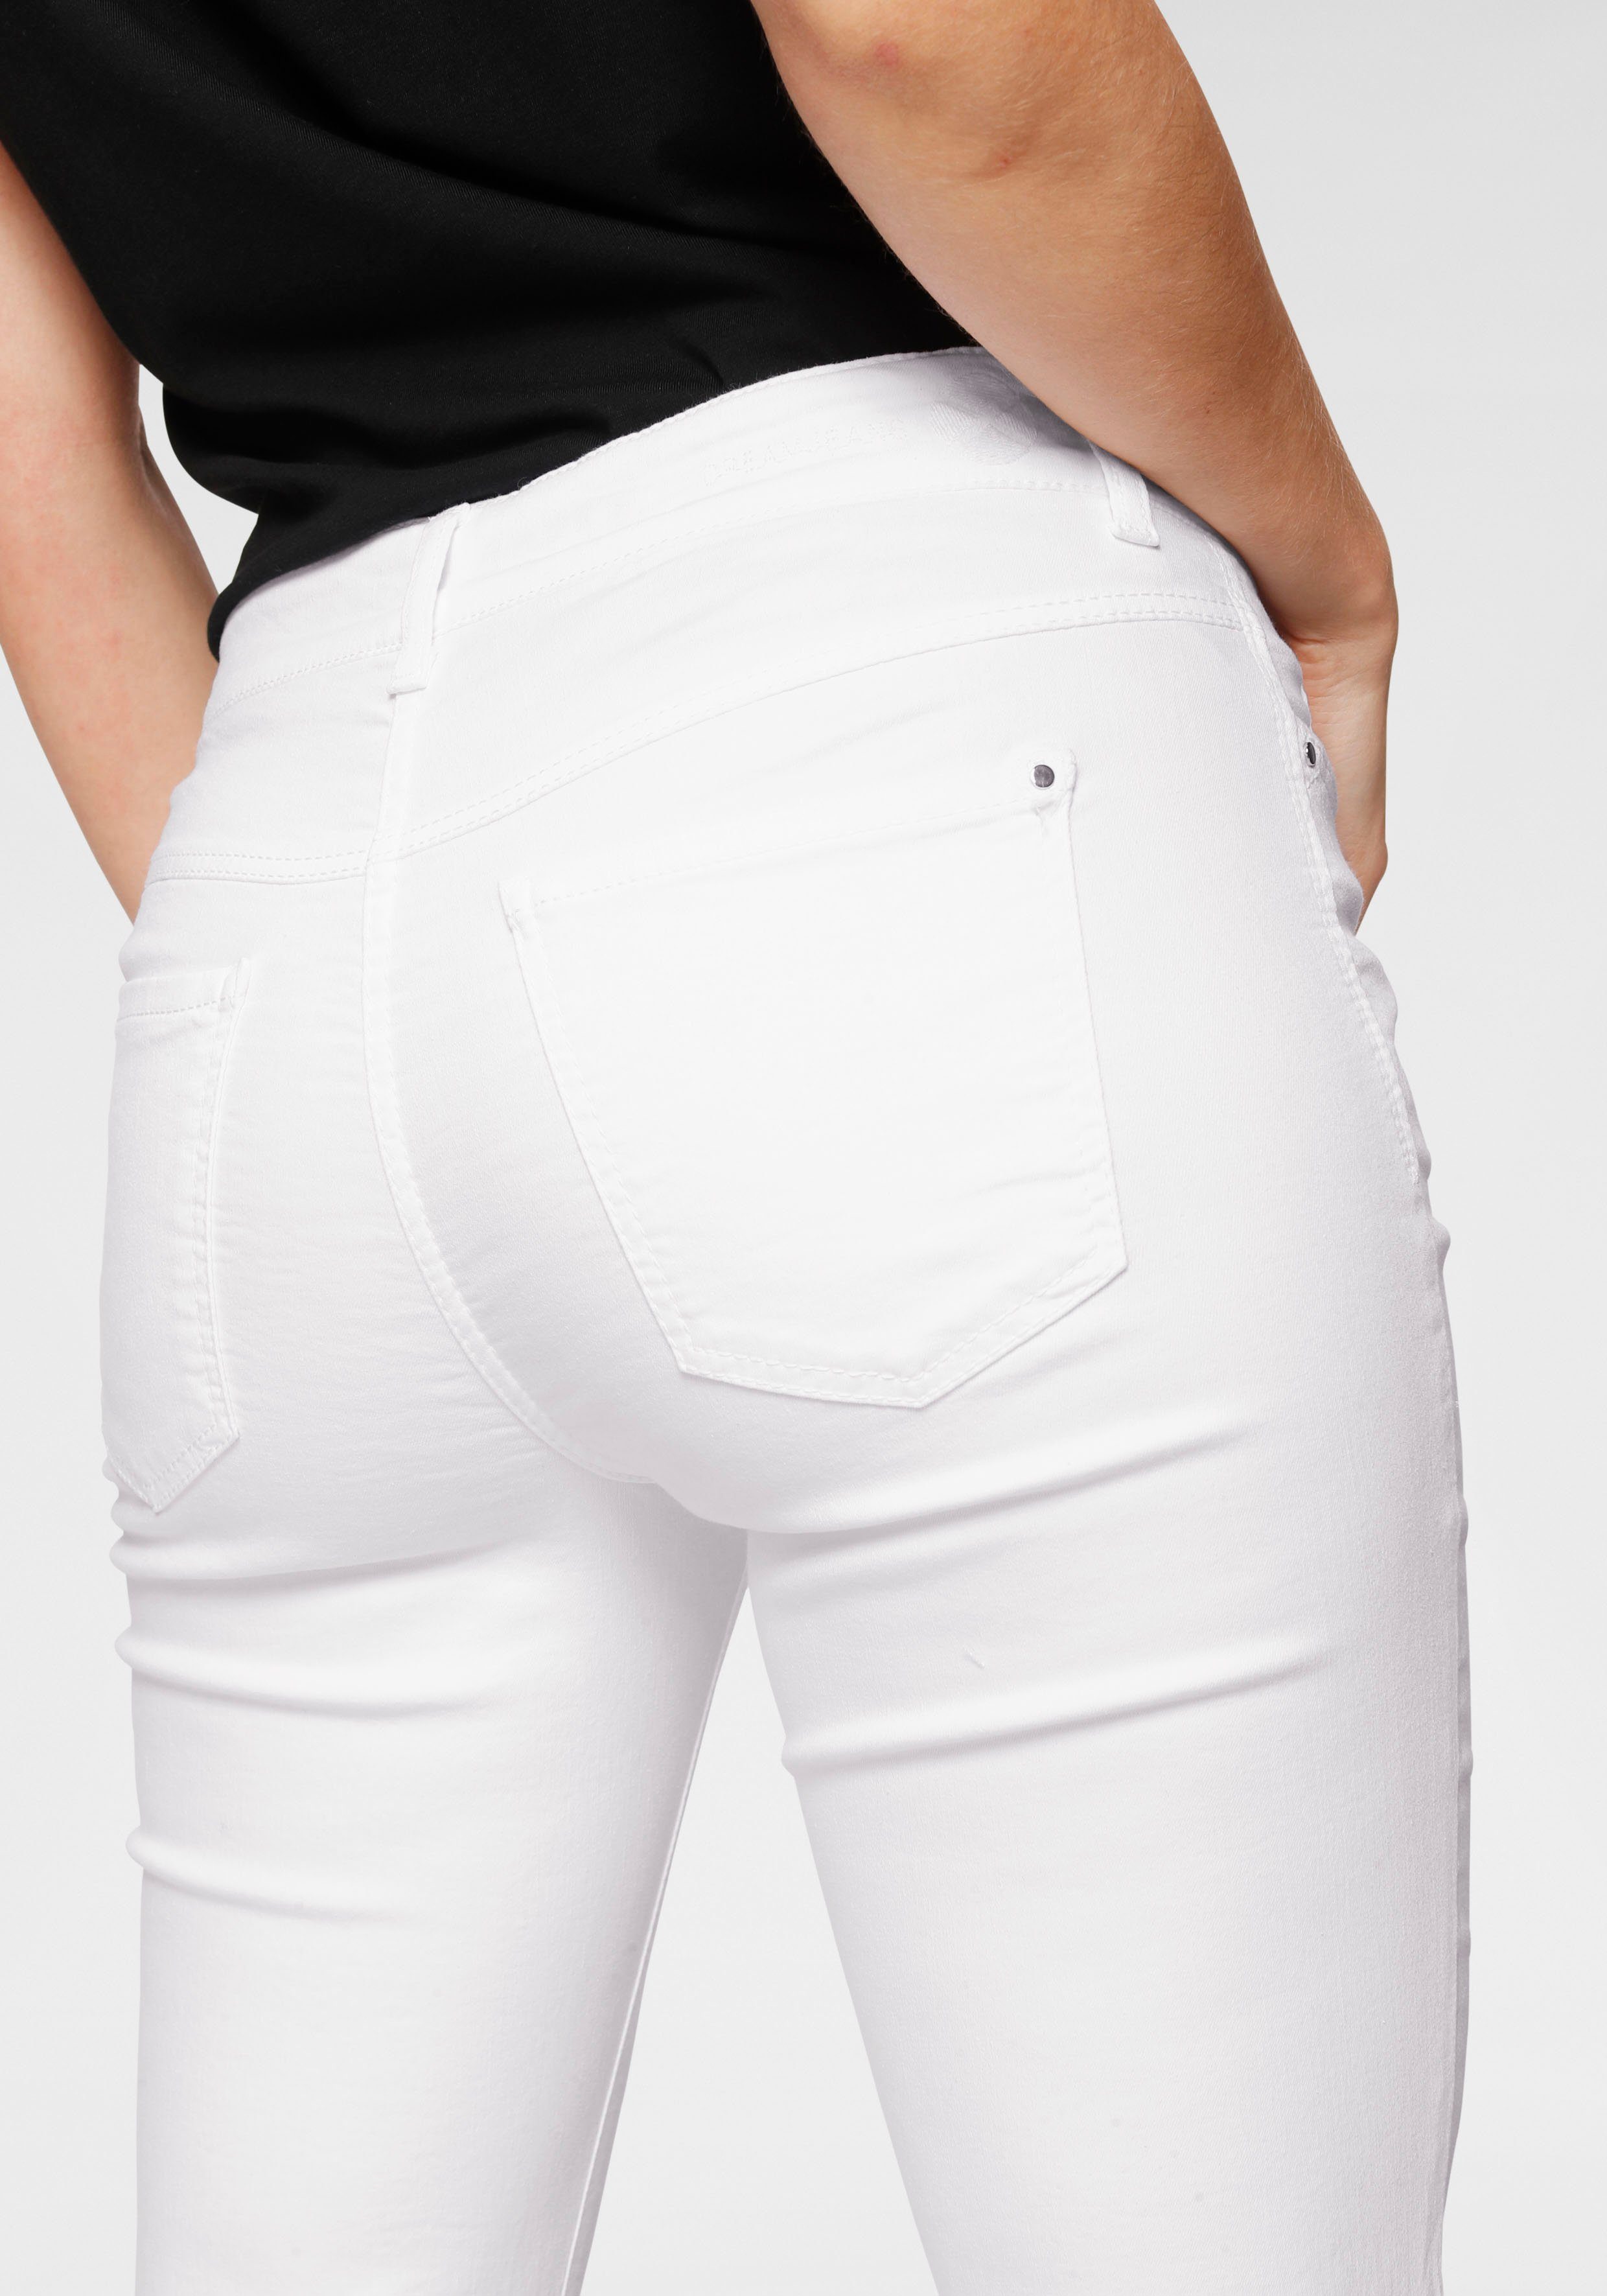 Dream den Stretch Stretch-Jeans MAC perfekten mit für white denim Sitz